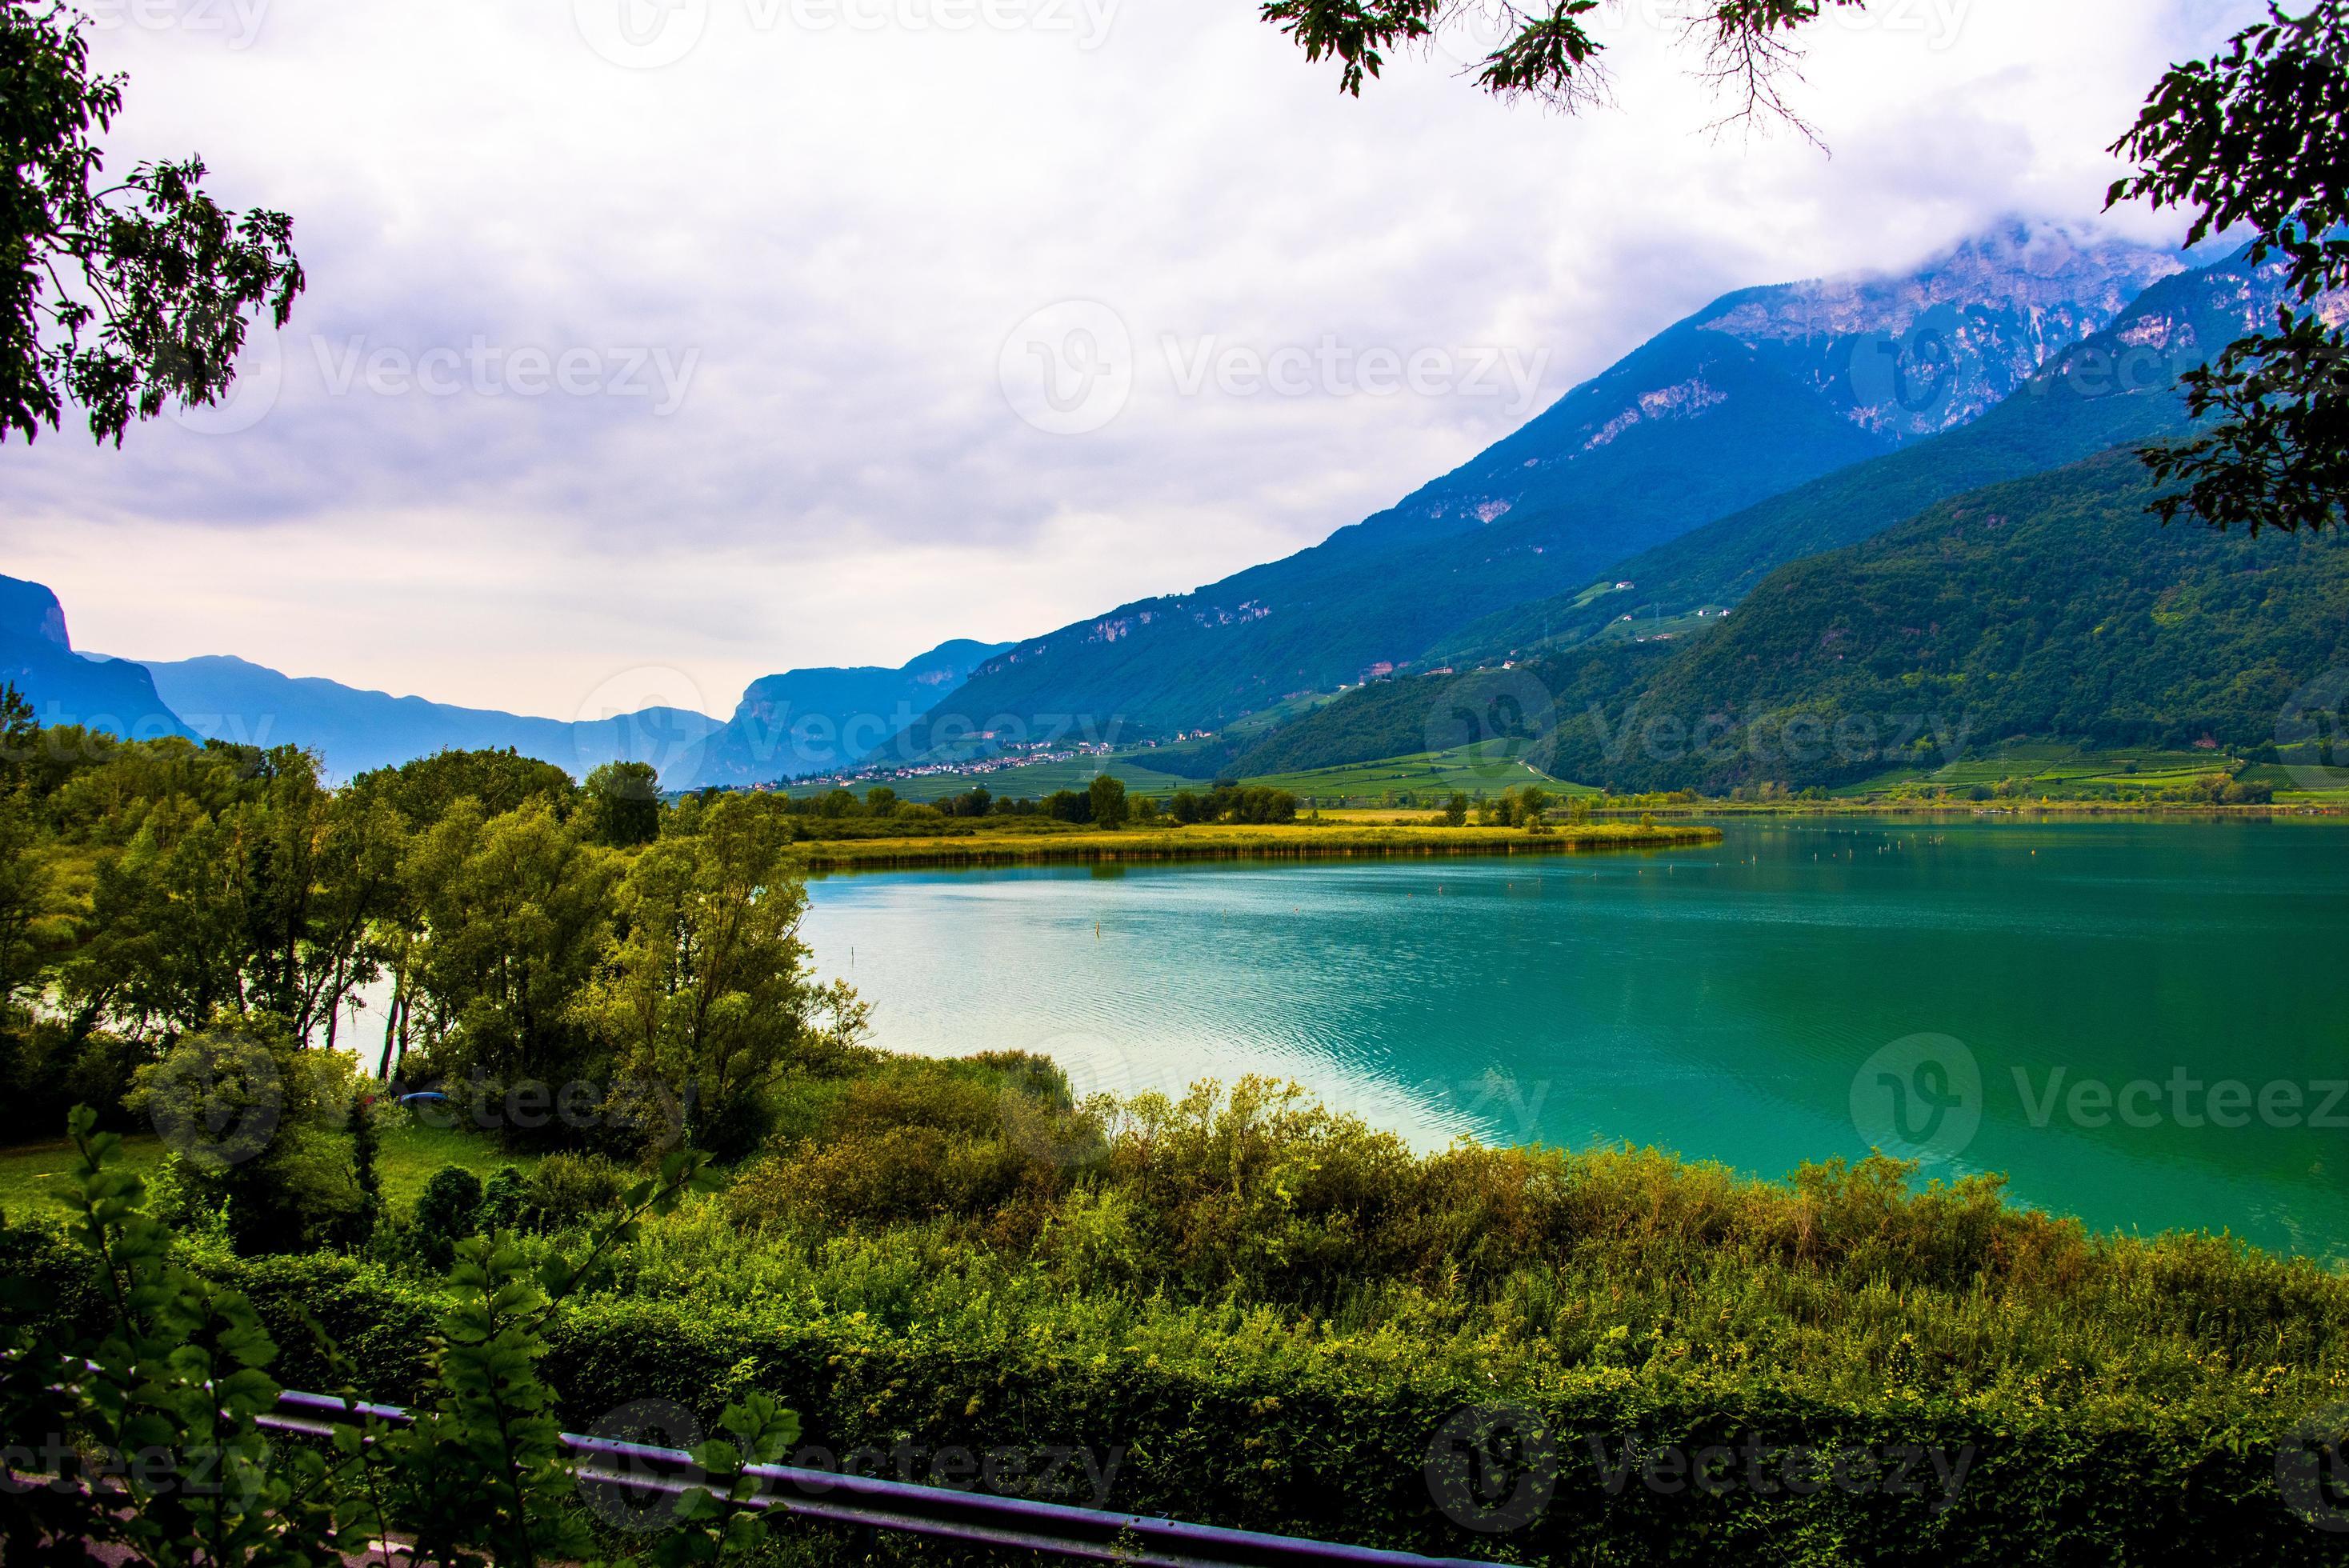 lago caldaro cercado pelas montanhas em bolzano, itália foto